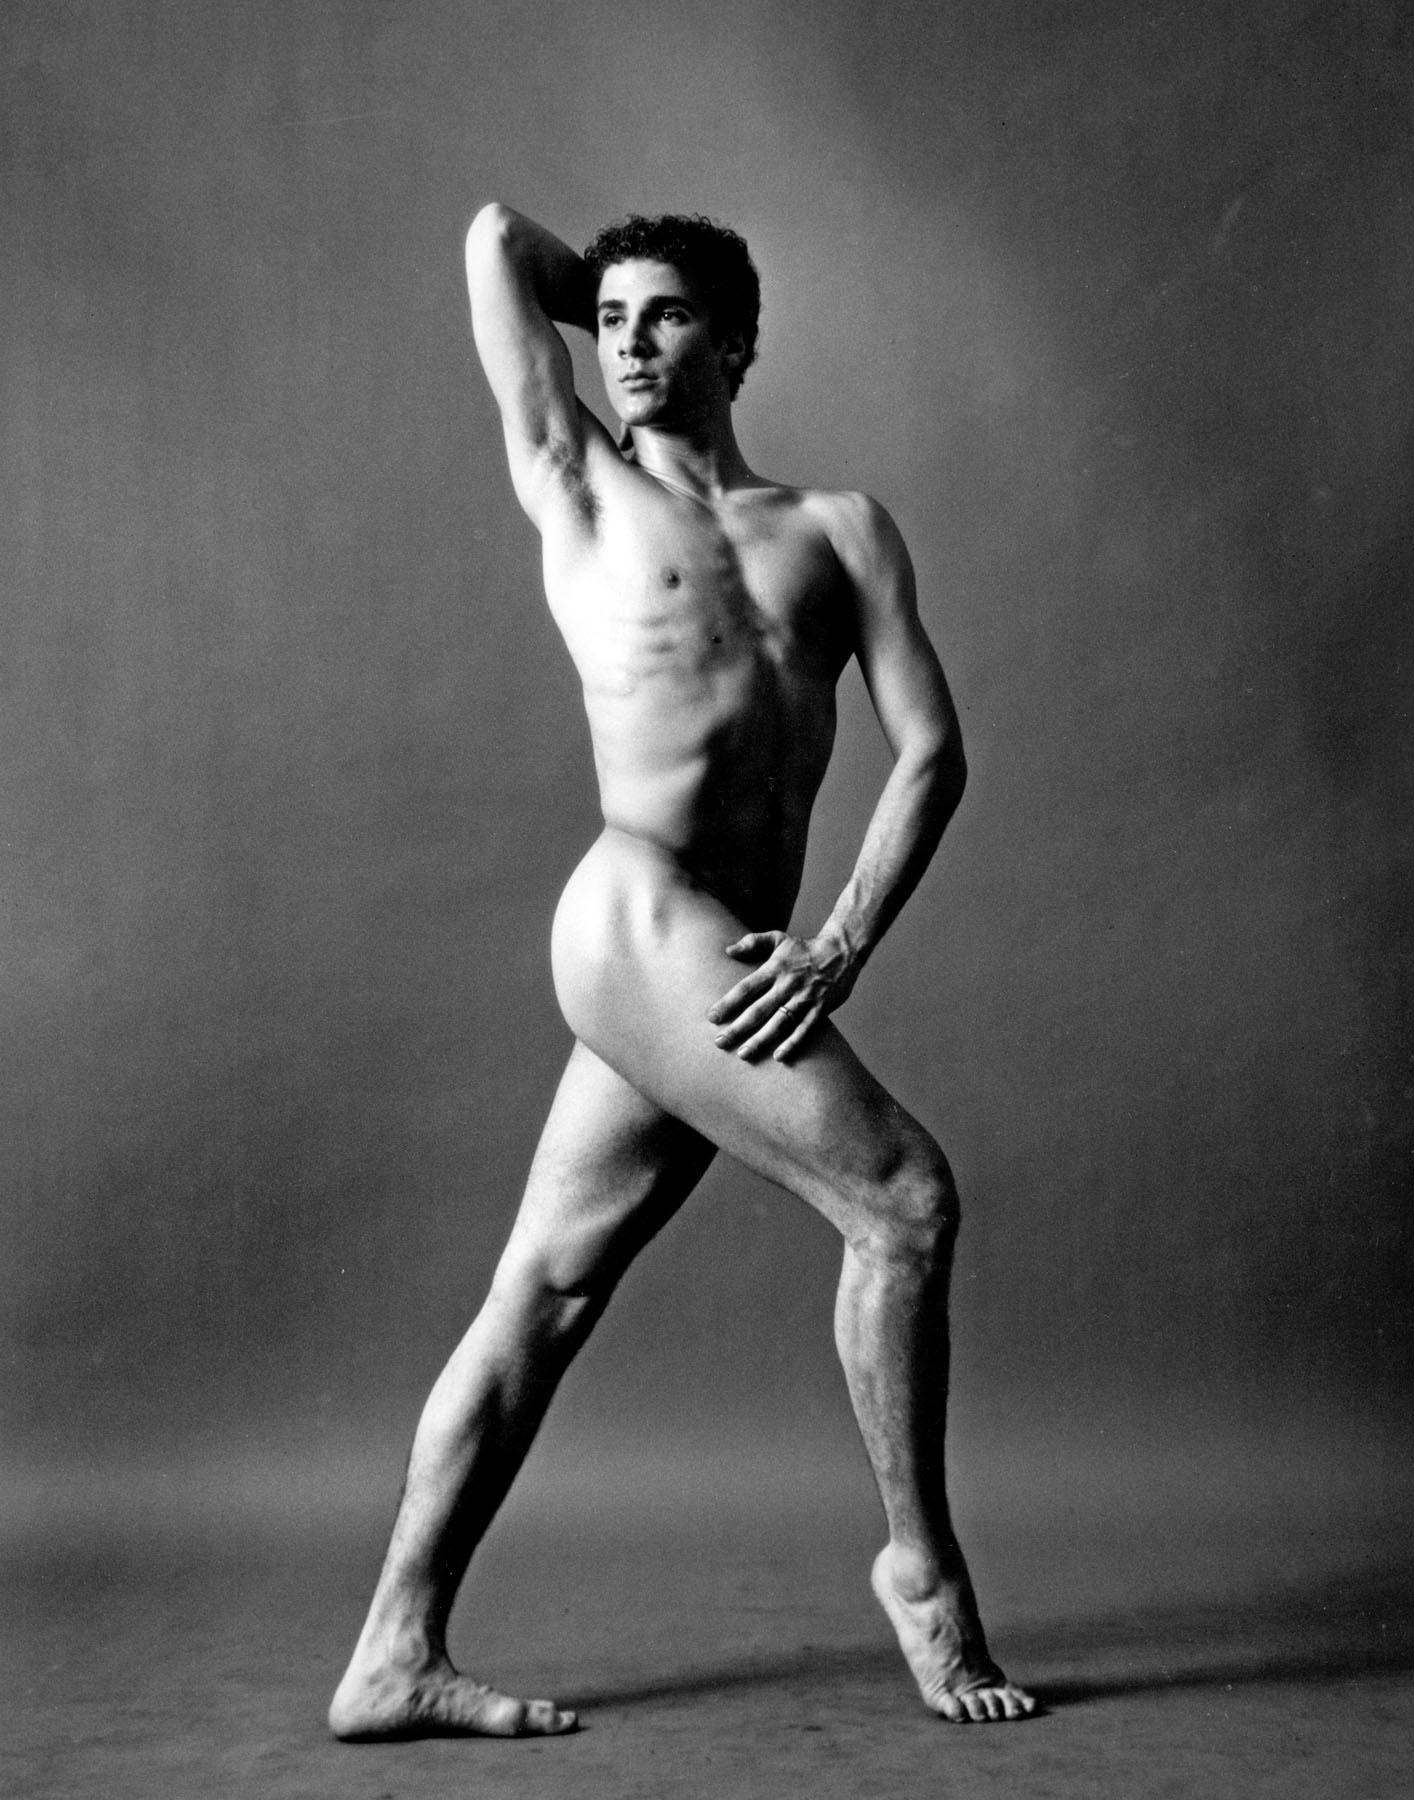 Danseuse et chorégraphe Louis Falco nue, signée par Jack Mitchell